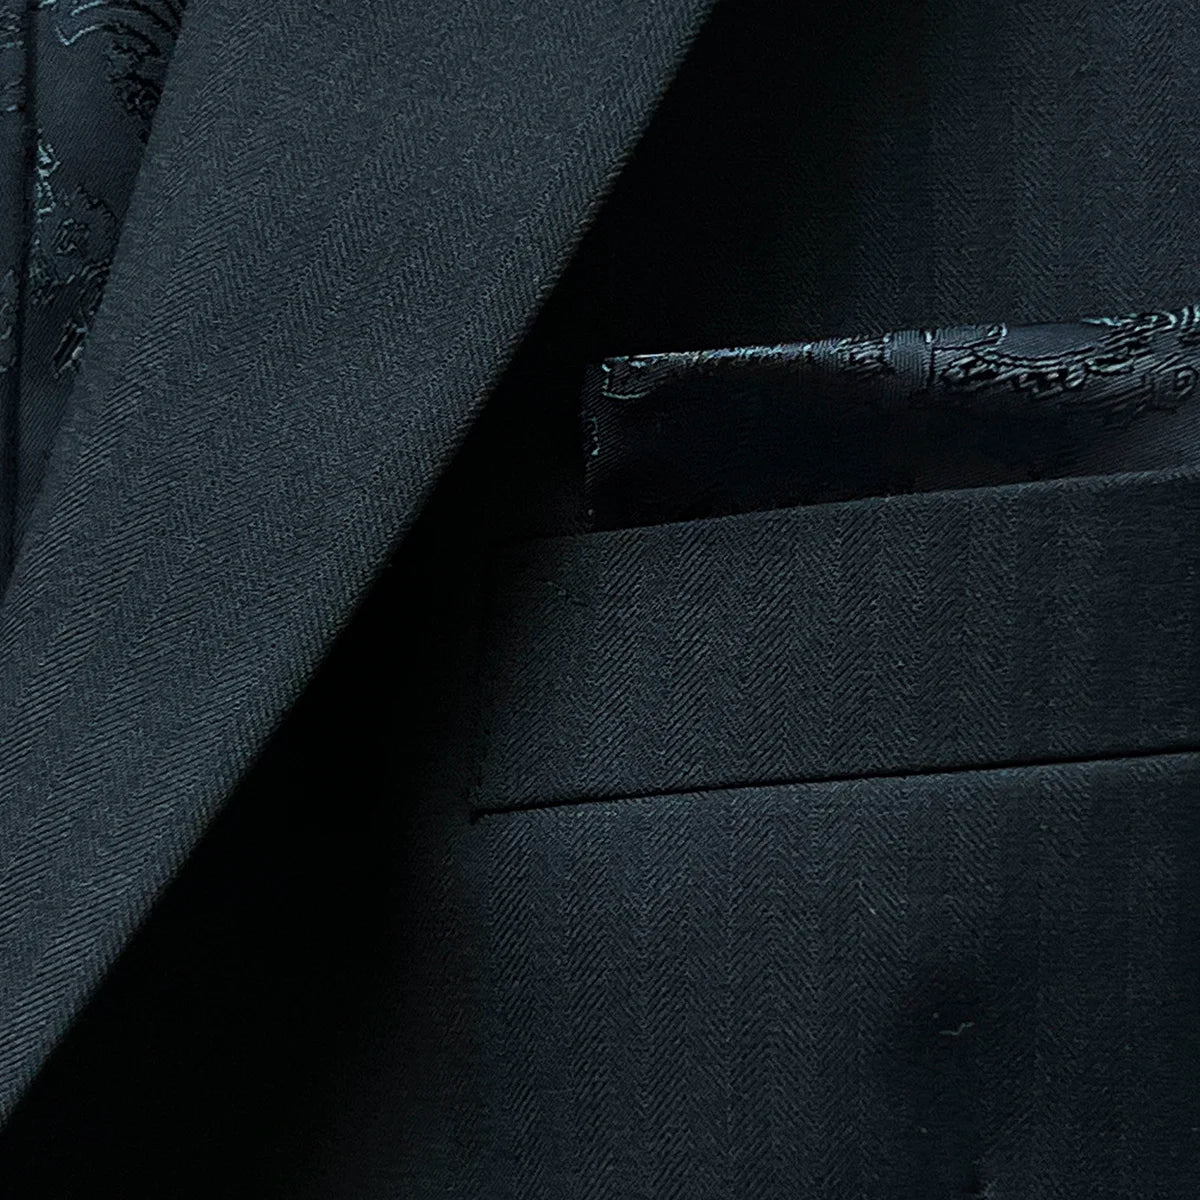 Pocket square in a classic black herringbone men's suit.